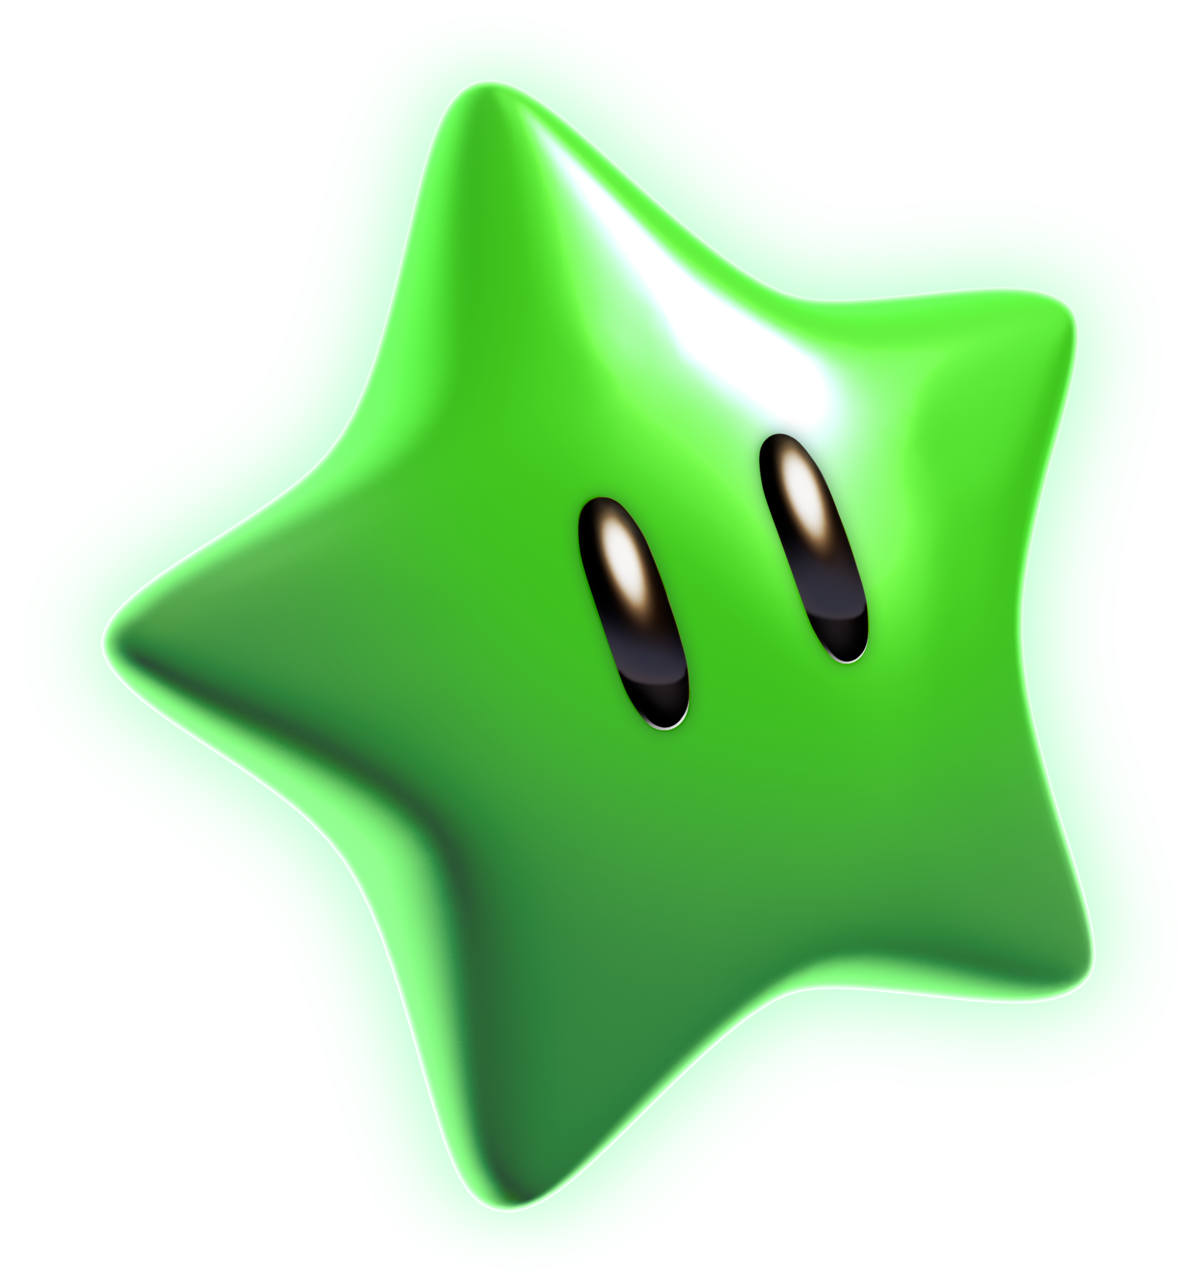 Super Mario Green Star3 D Render PNG